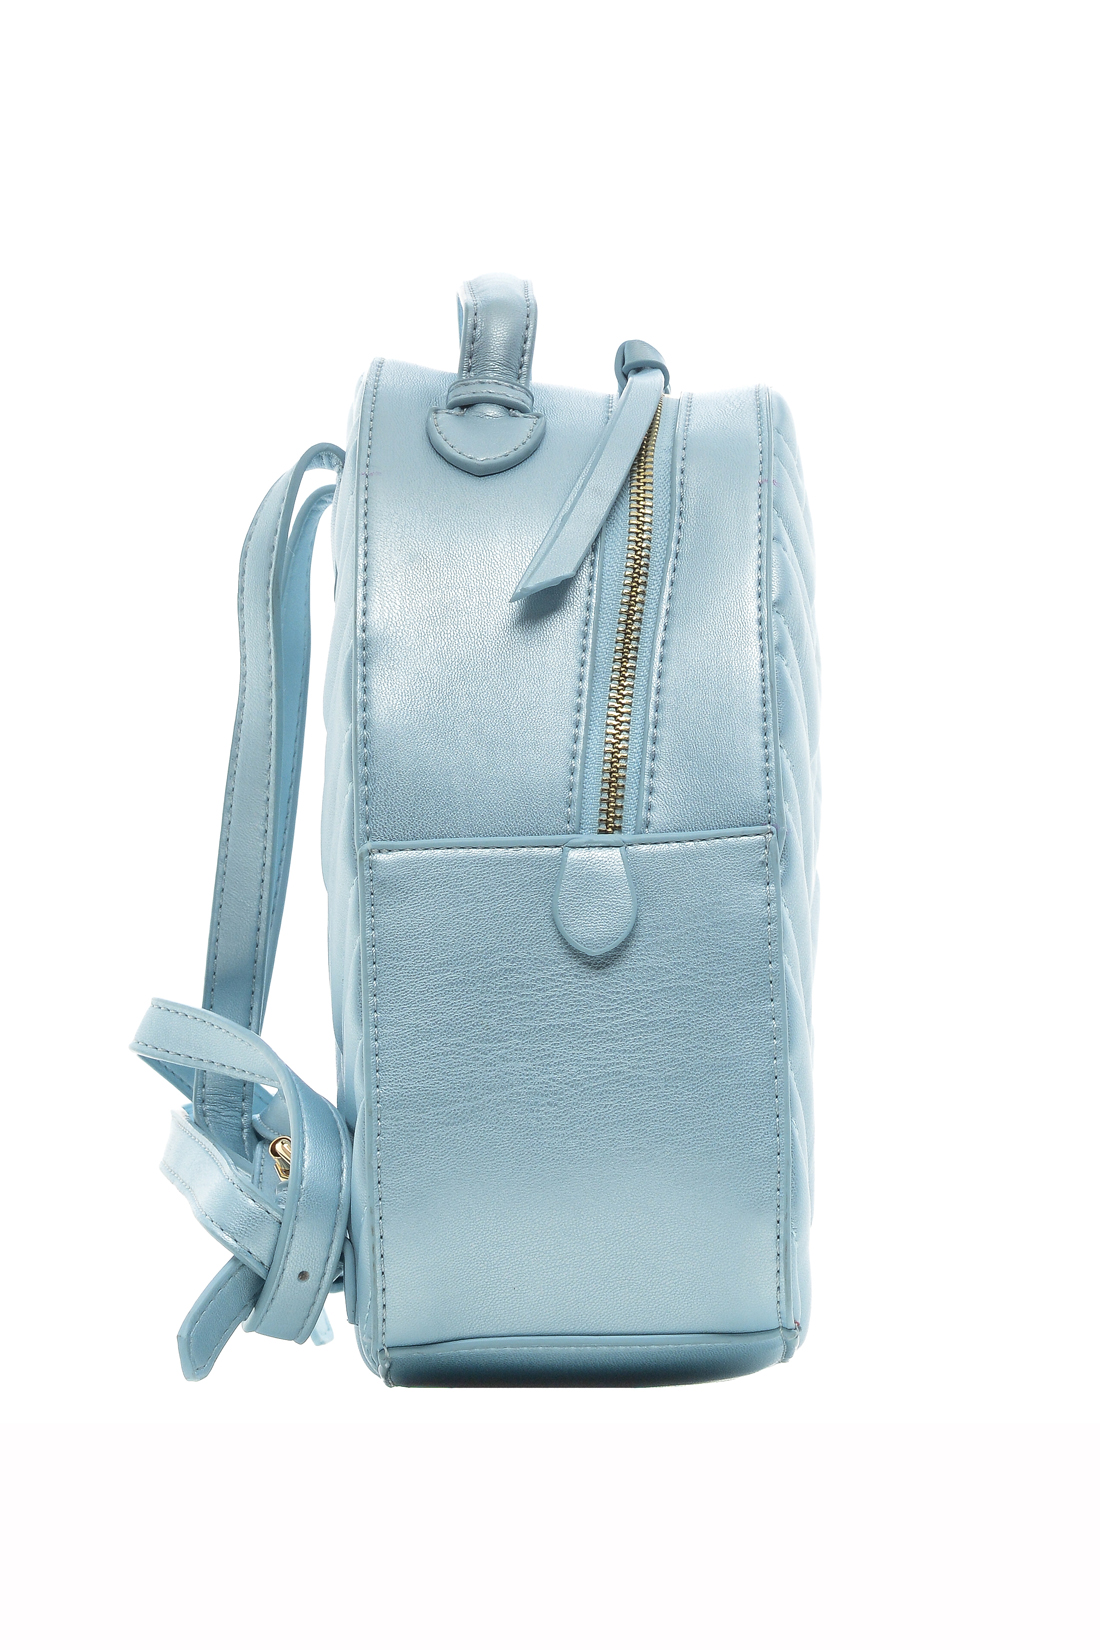 Рюкзак с перламутровым эффектом (арт. baon B379001), размер Без/раз, цвет голубой Рюкзак с перламутровым эффектом (арт. baon B379001) - фото 5